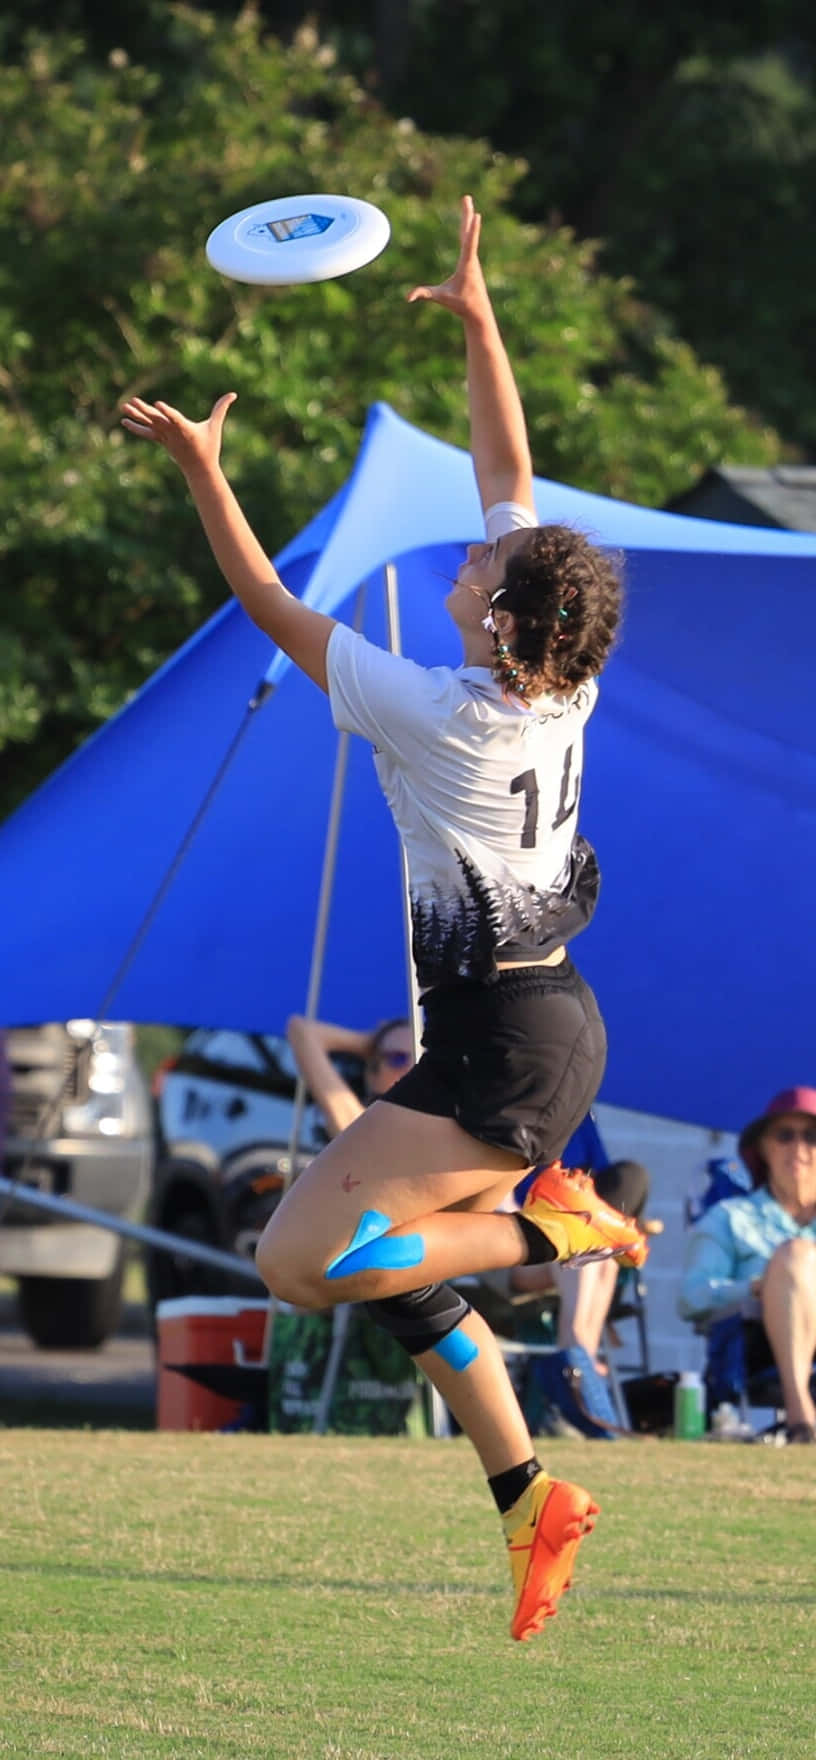 Atletafemminile Che Prende Al Volo Un Frisbee Durante Uno Sfondo Di Android Ultimate Frisbee.